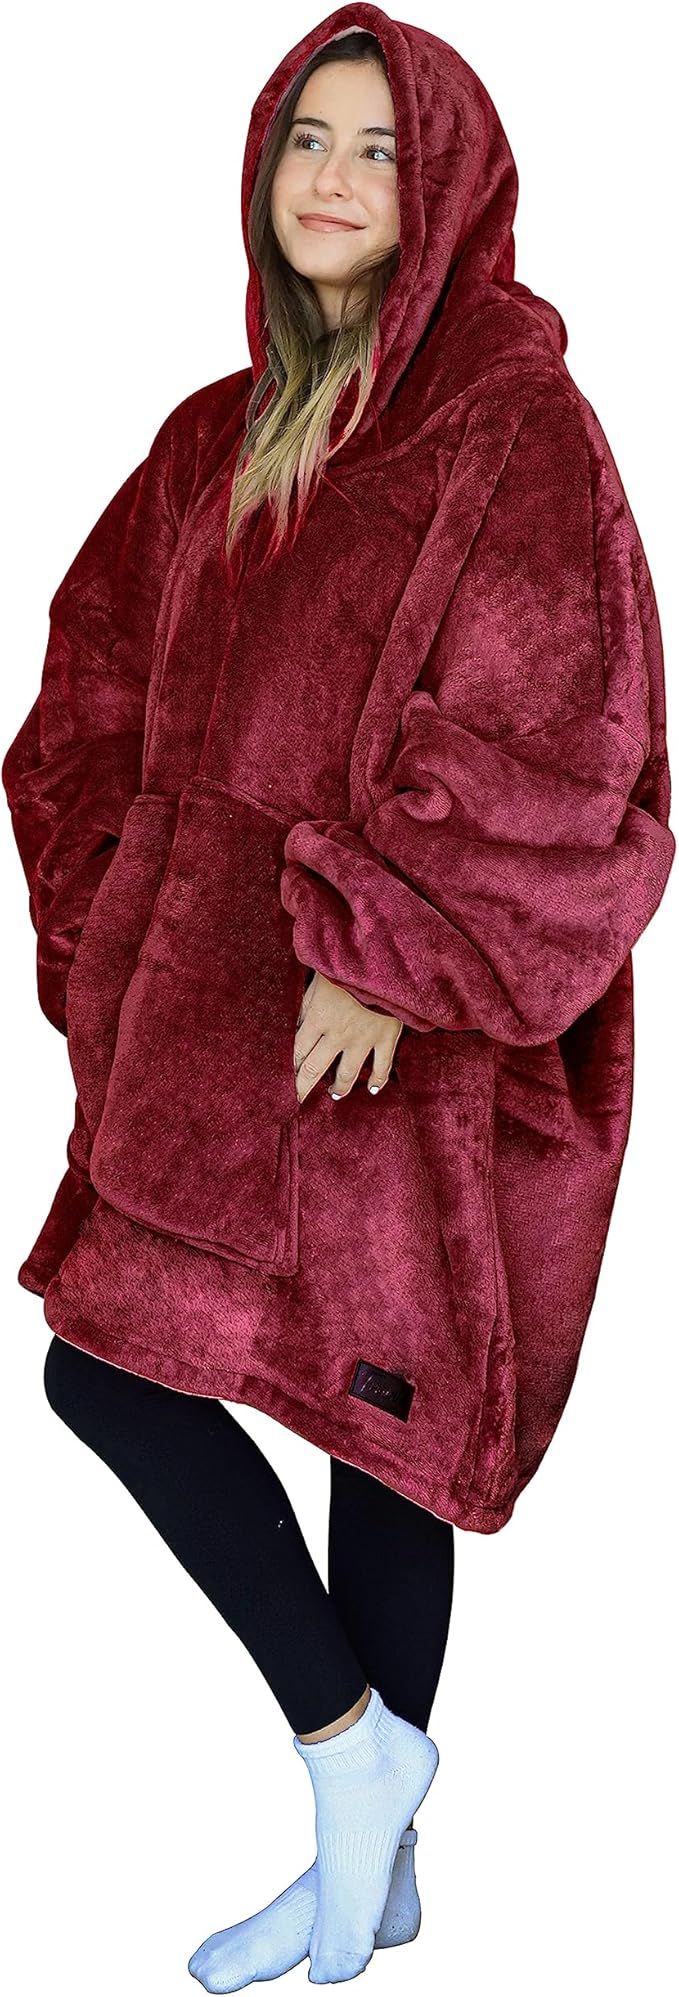 Oversized Hoodie Blanket Sweatshirt Comfortable Sherpa Giant Wearable Blankets Gift for Adults Me... | Amazon (US)